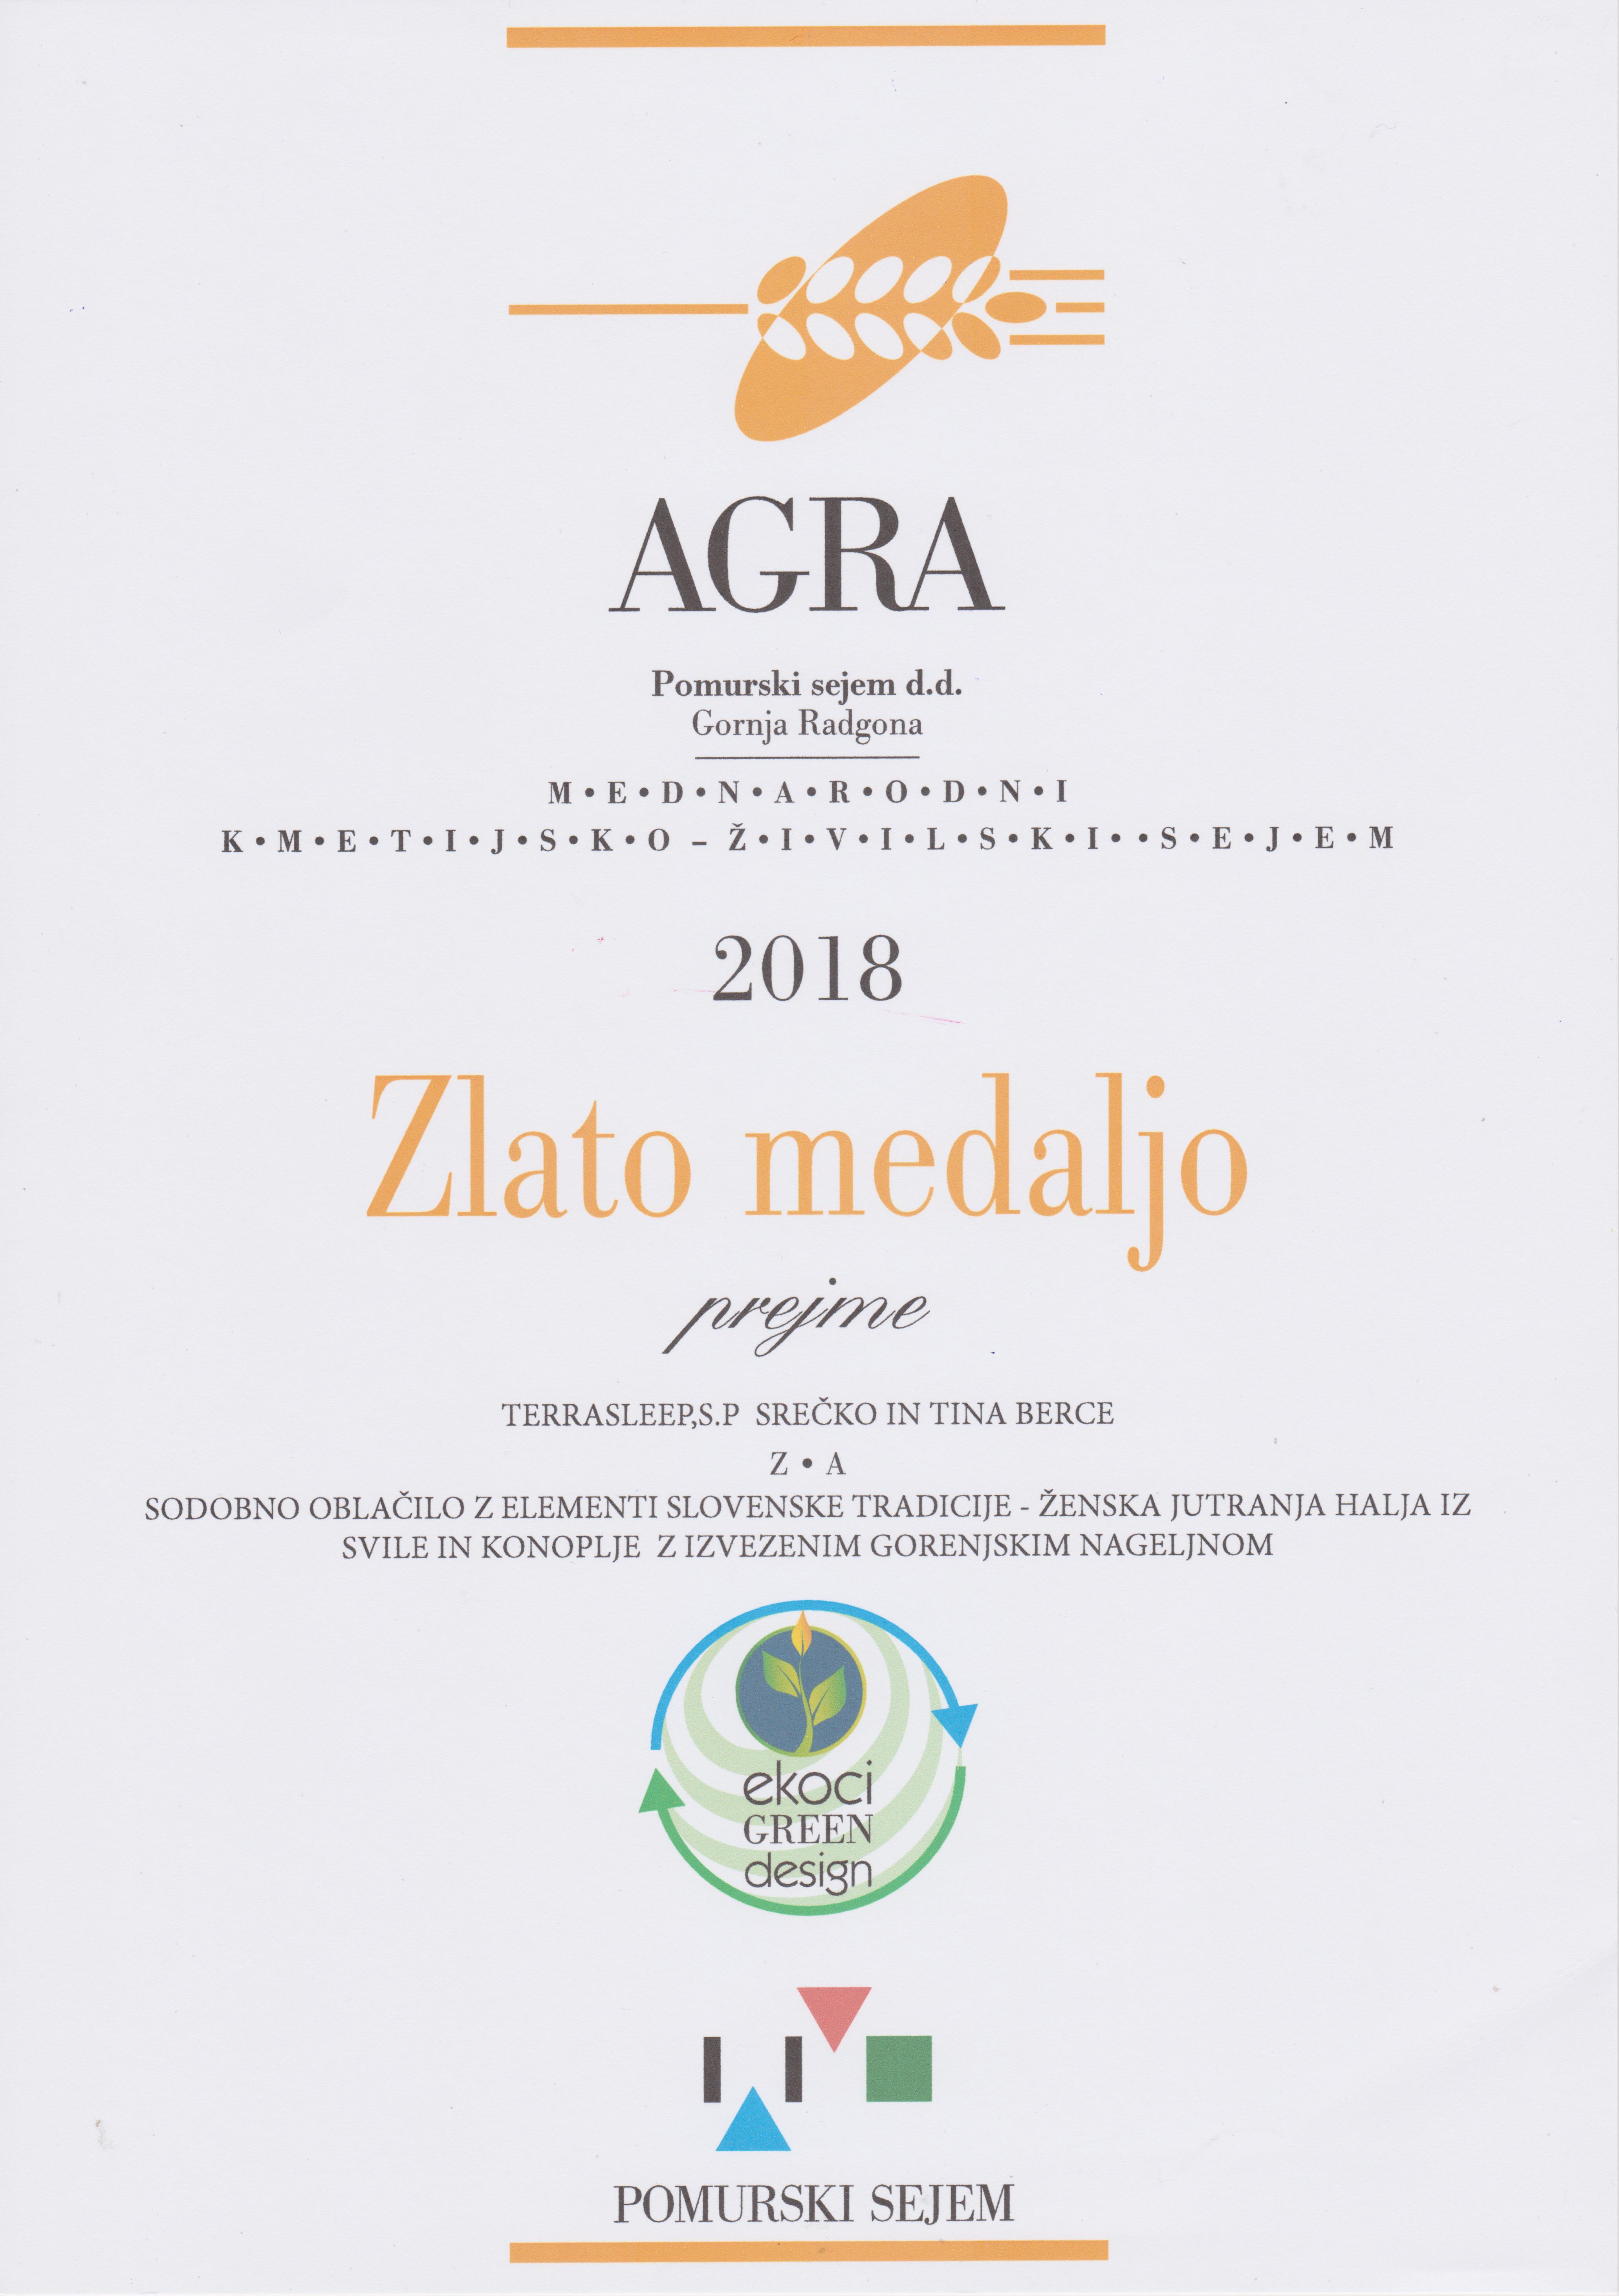 Zlata medalja AGRA 2018 - sodobno oblačilo z elementi slovenske tradicije